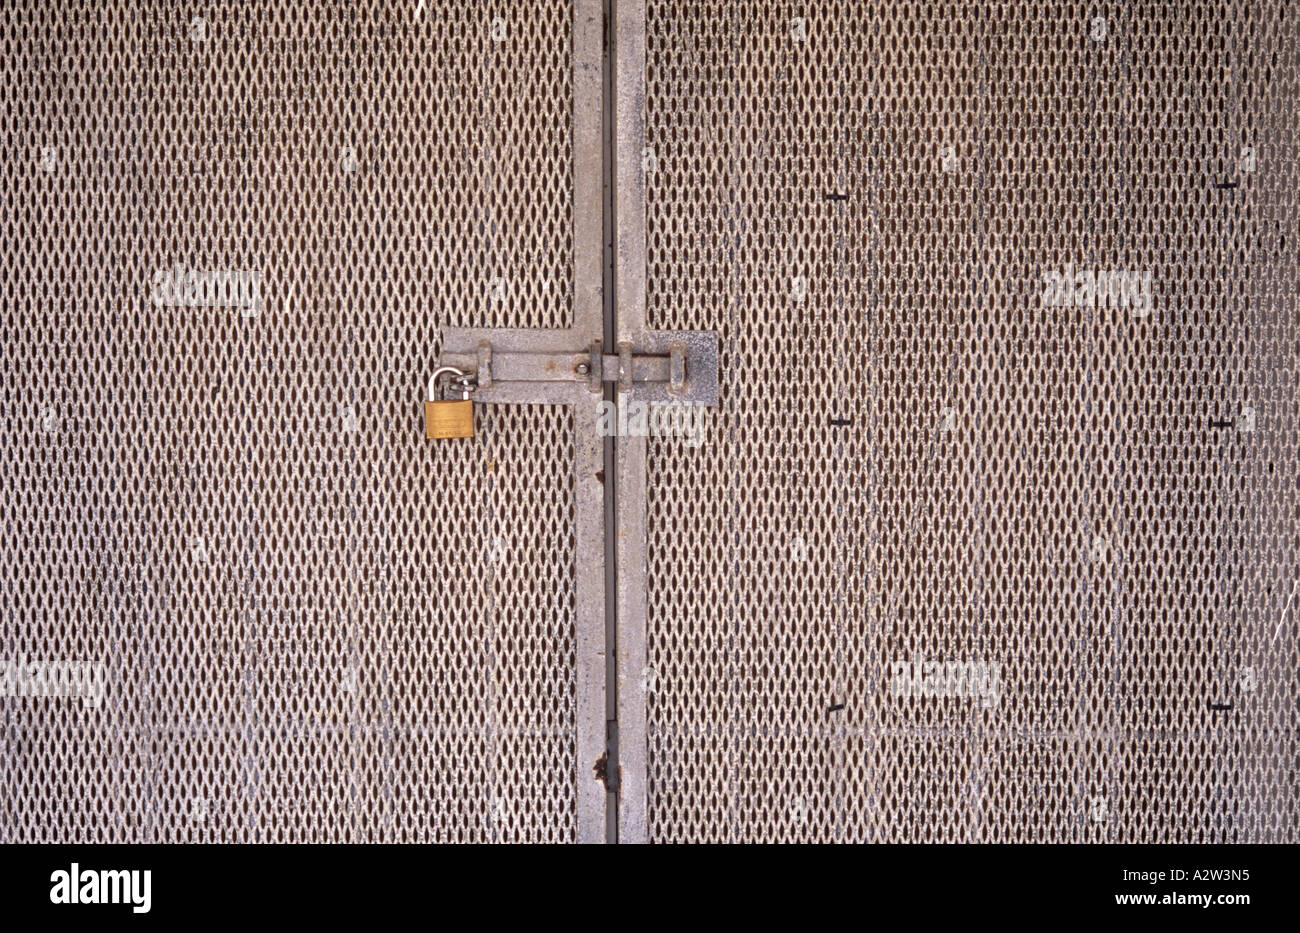 Detail of a pair of aluminium mesh security doors with sliding metal bar and padlock Stock Photo